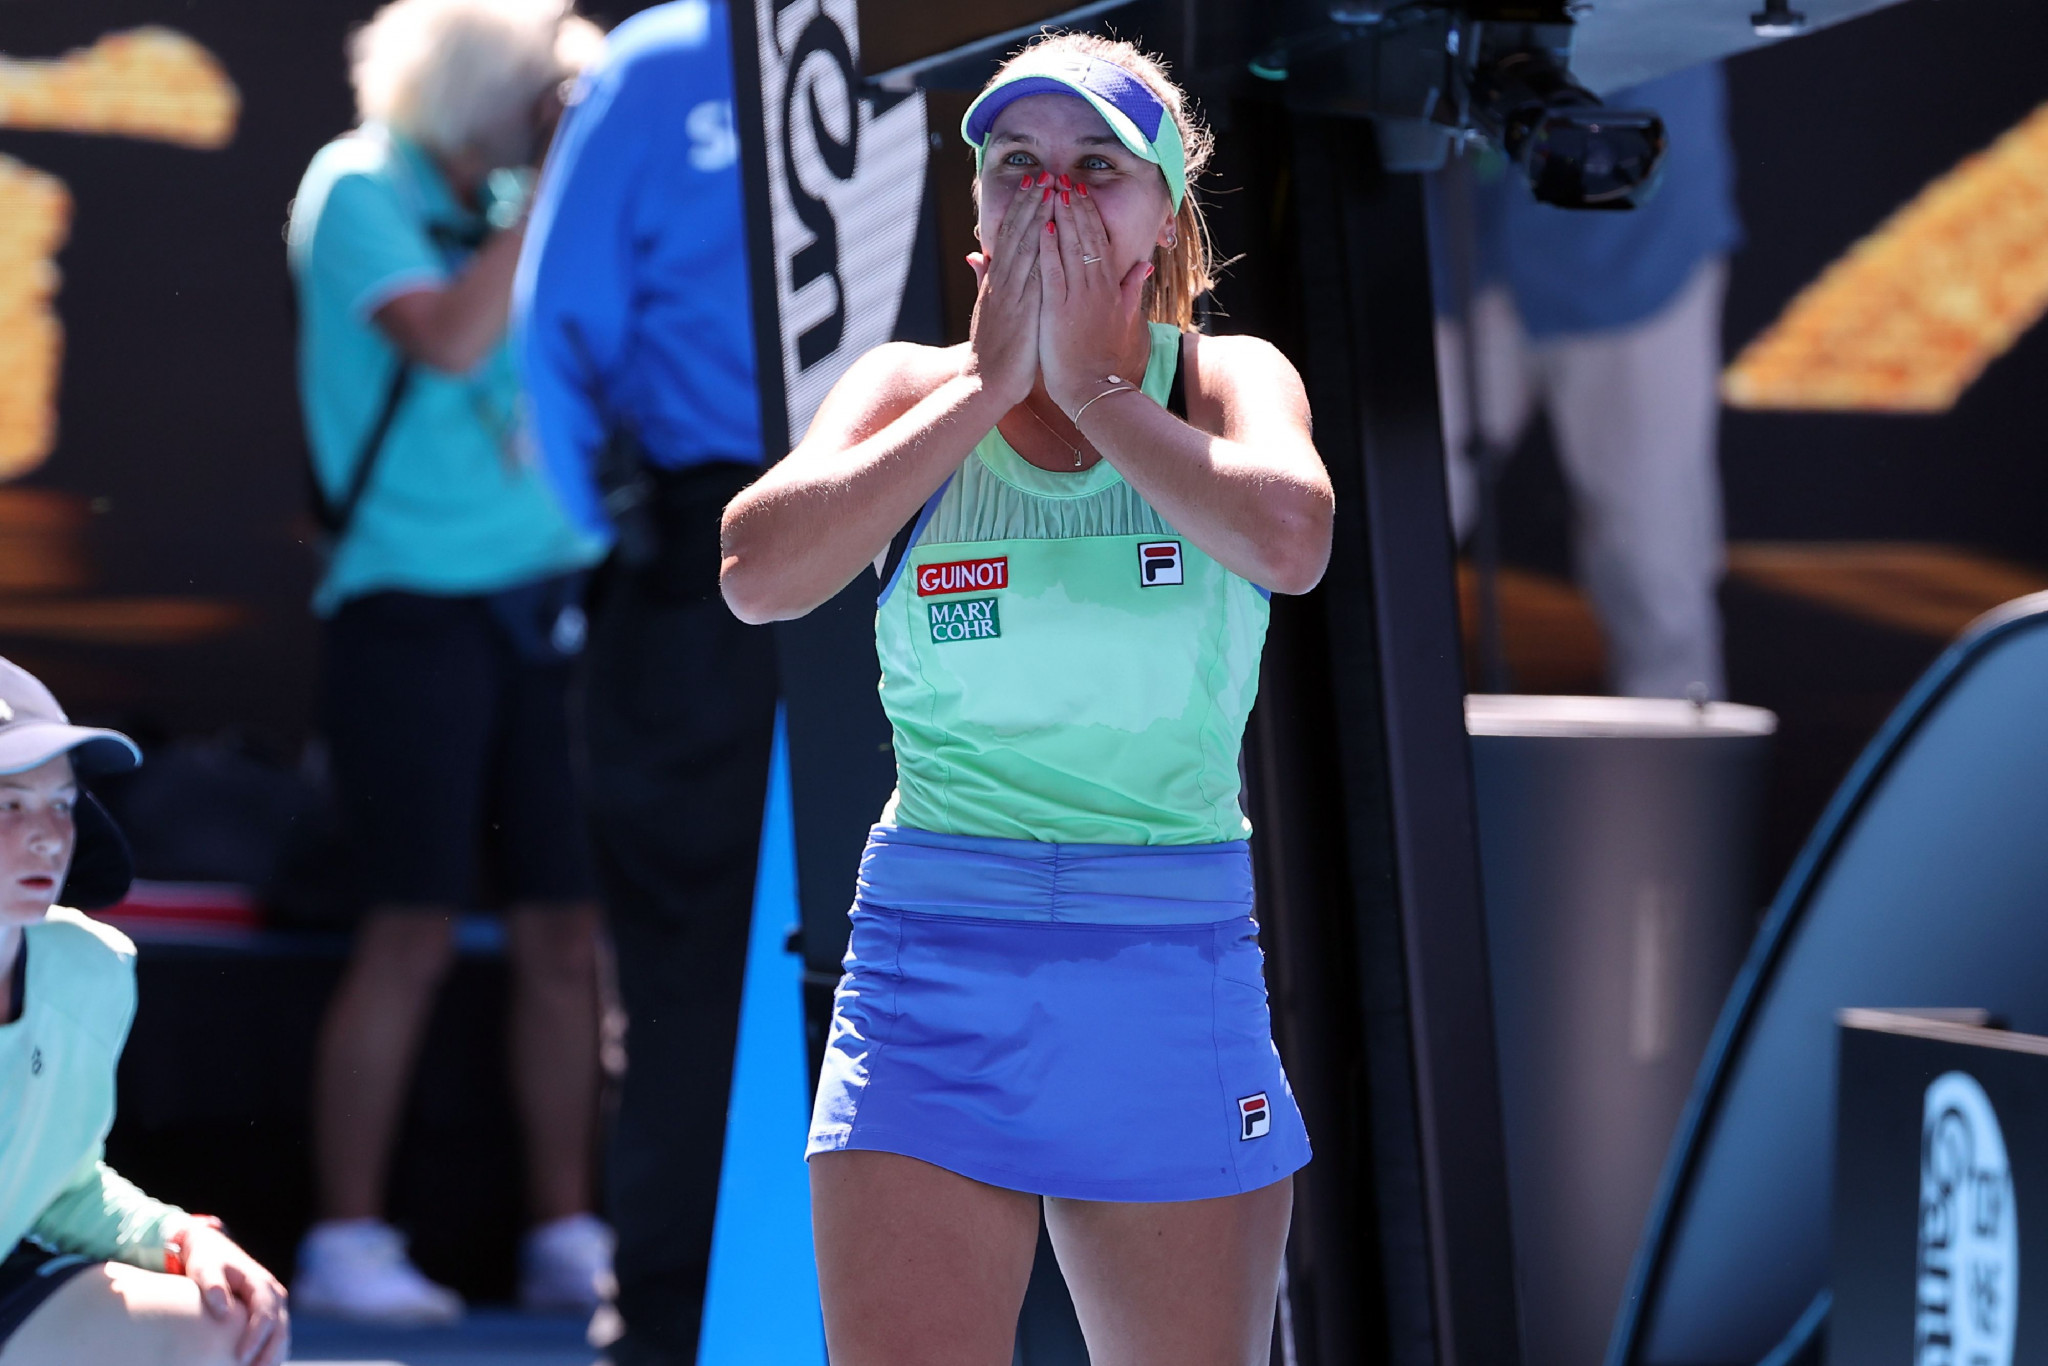 Home heartbreak at Australian Open as Barty departs